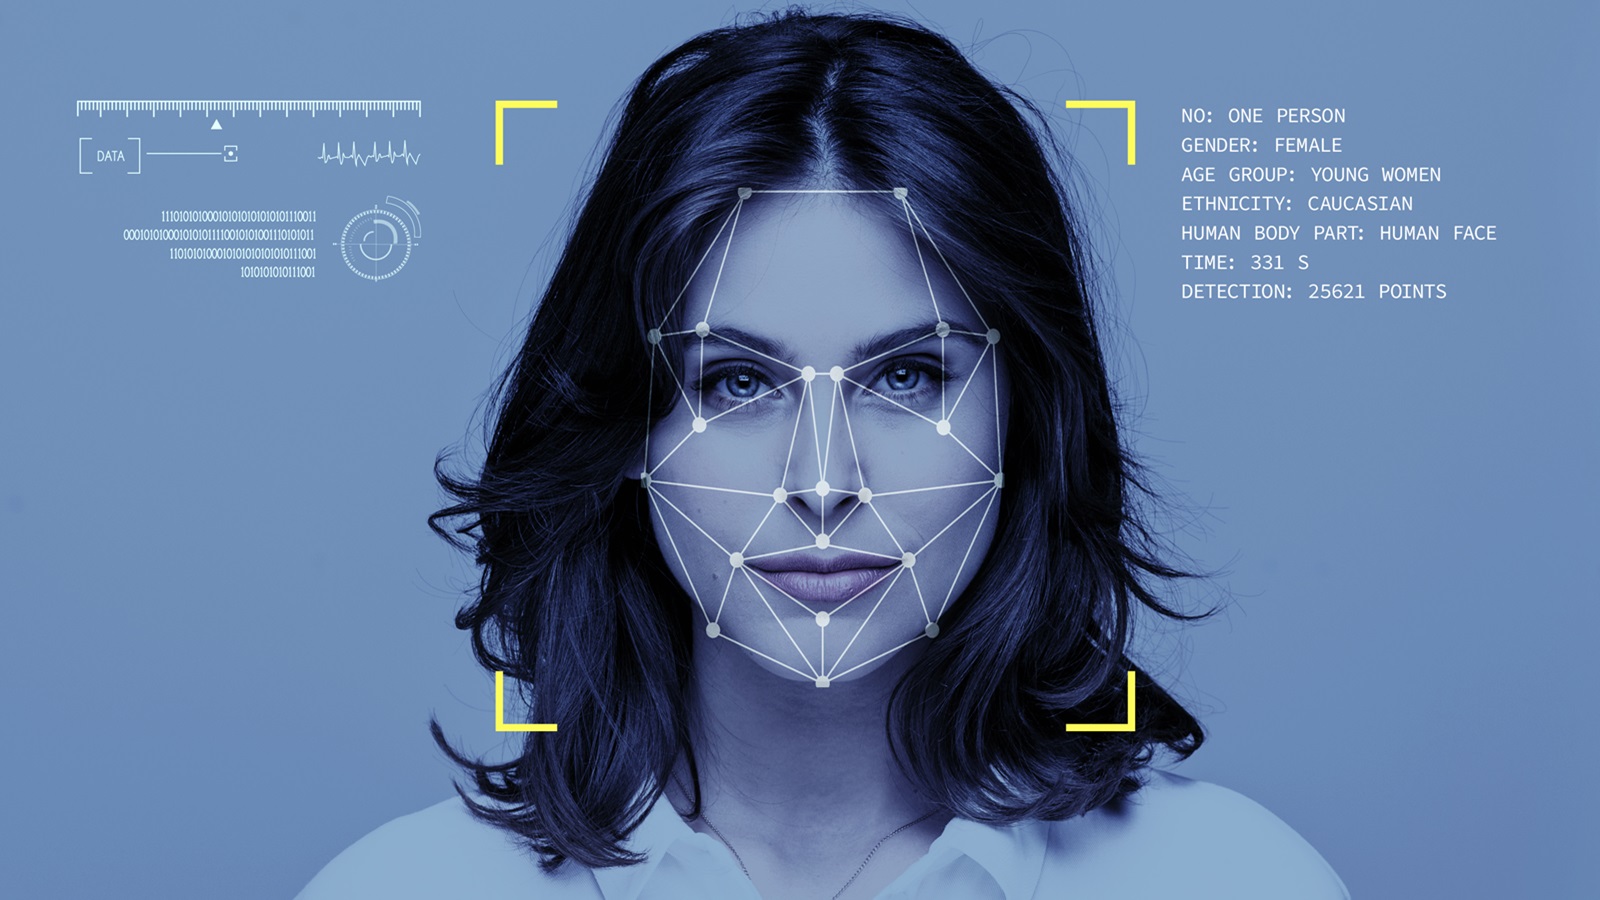 الولايات المتحدة: اعتقالات بالخطأ بسبب تكنولوجيا التعرف على الوجه